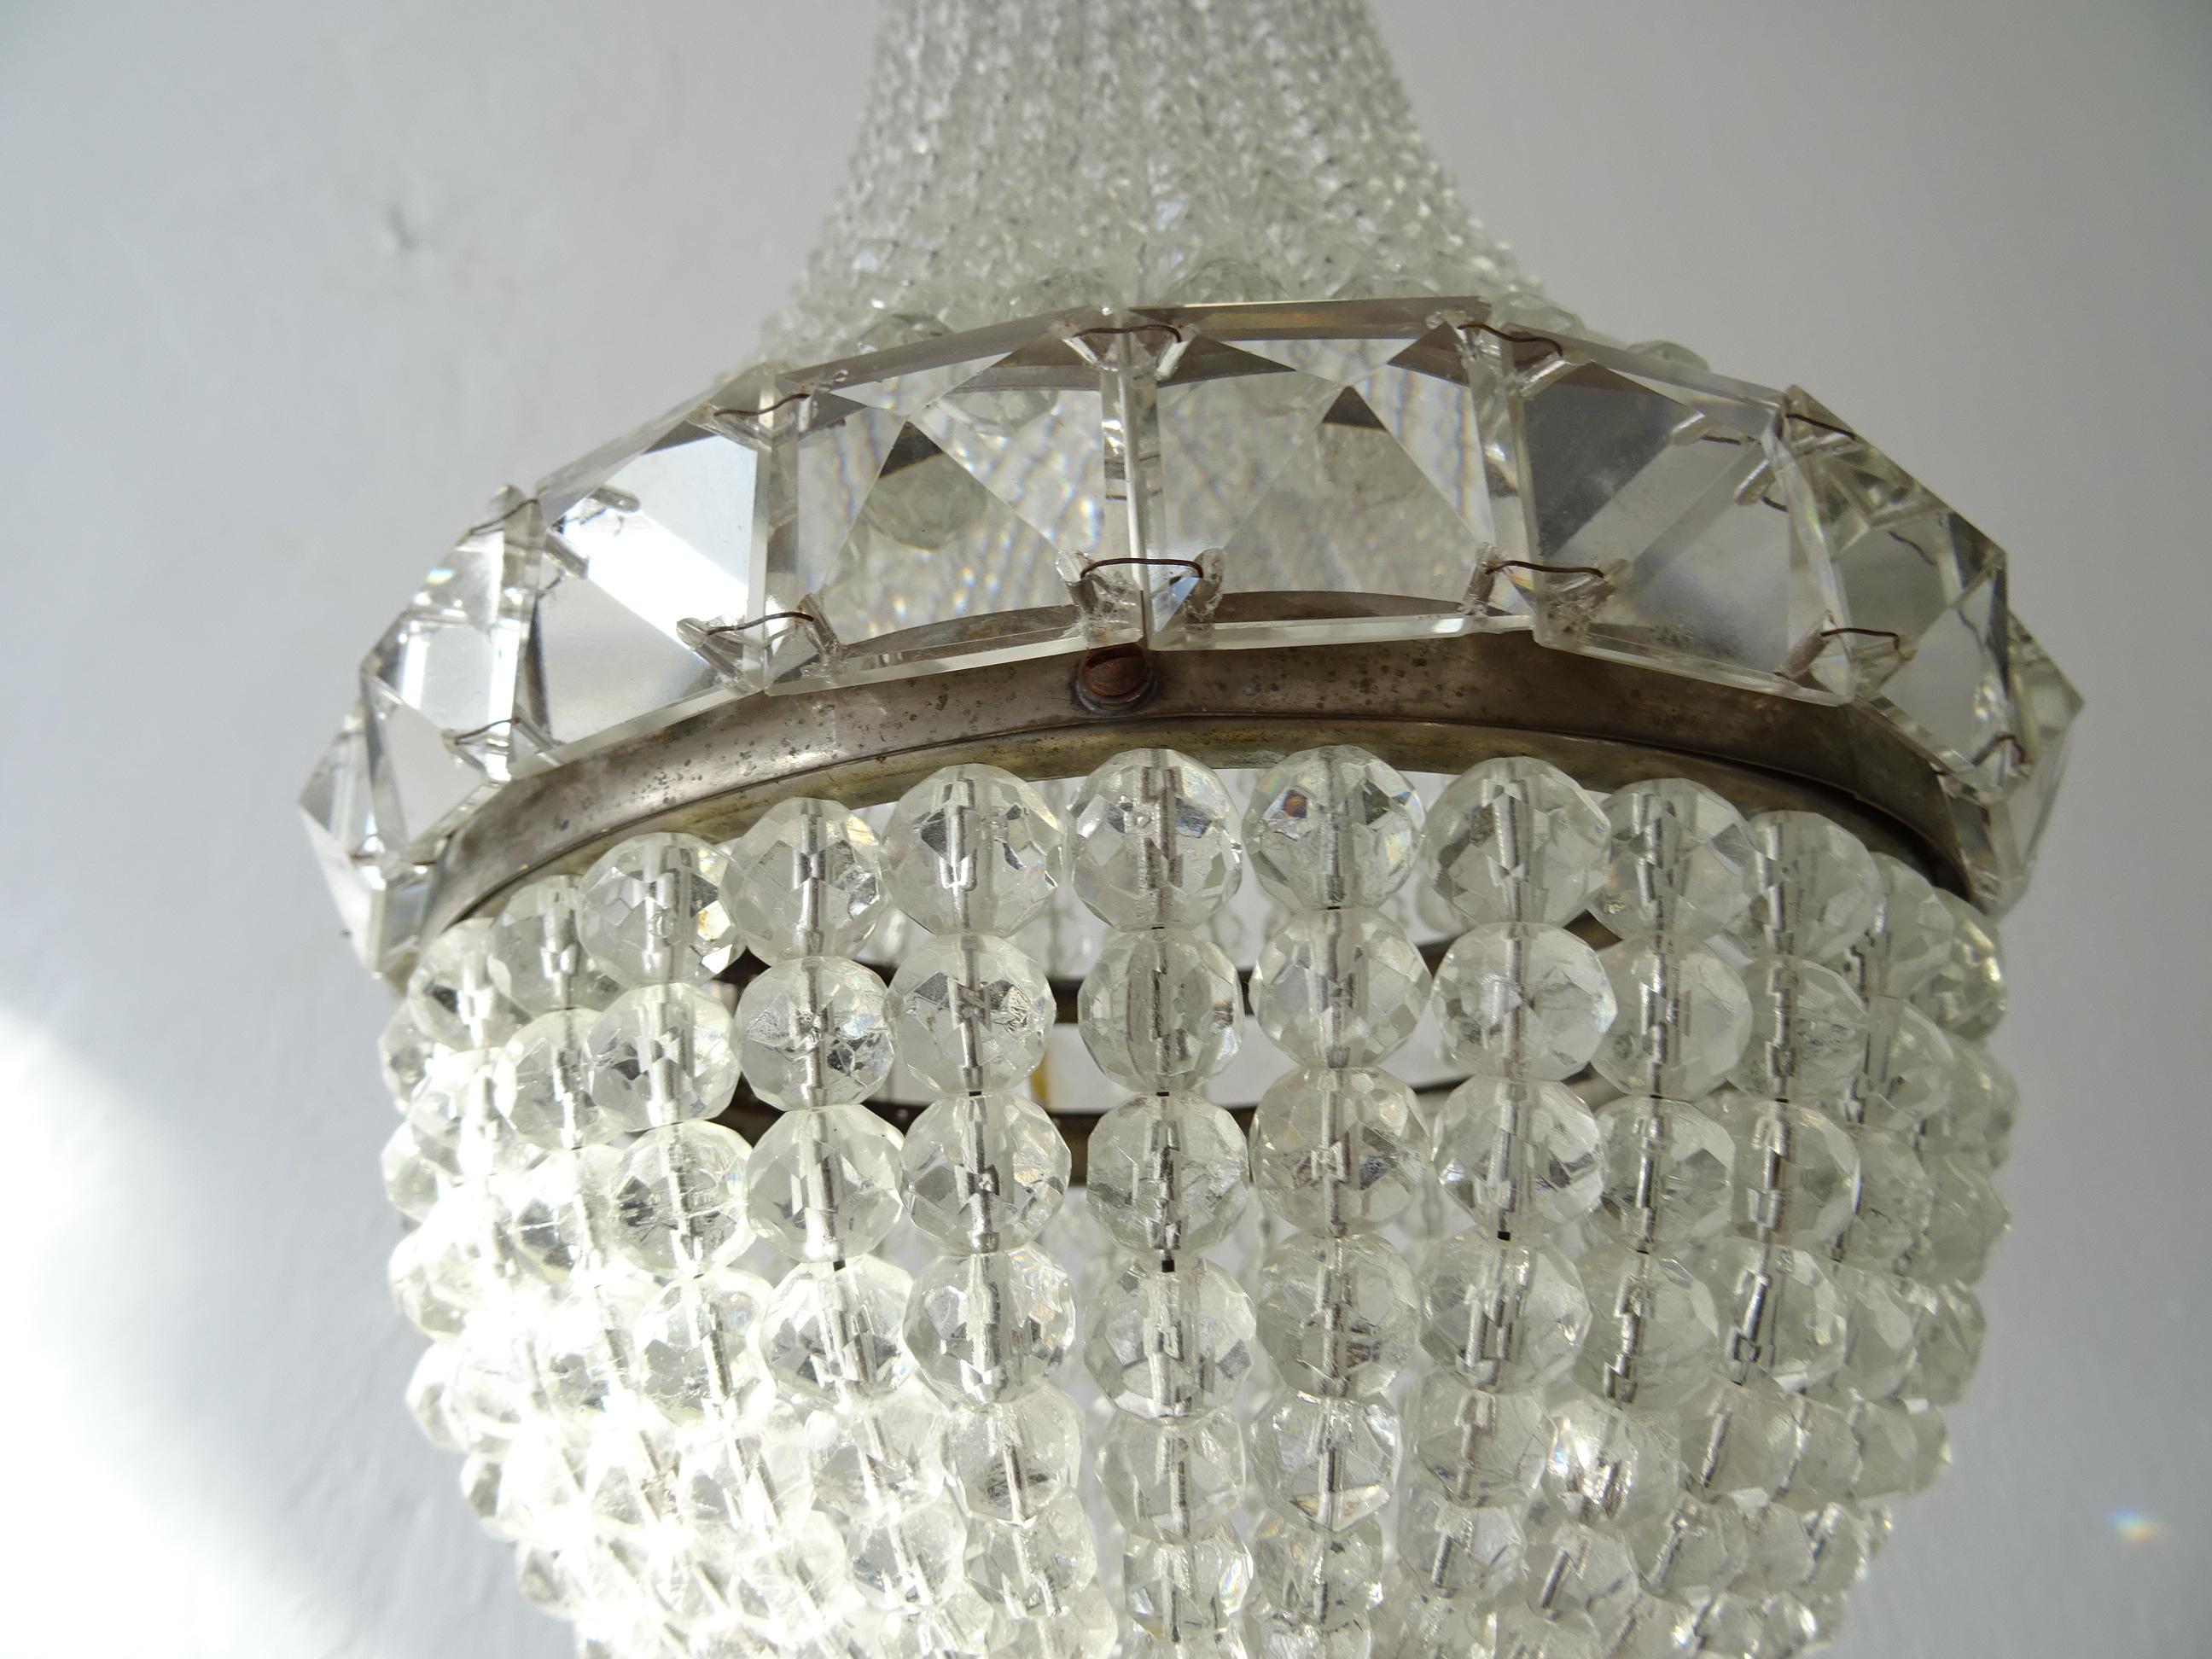 Magnifique lustre à dôme en cristal tchécoslovaque perlé, datant d'environ 1900 Bon état - En vente à Modena (MO), Modena (Mo)